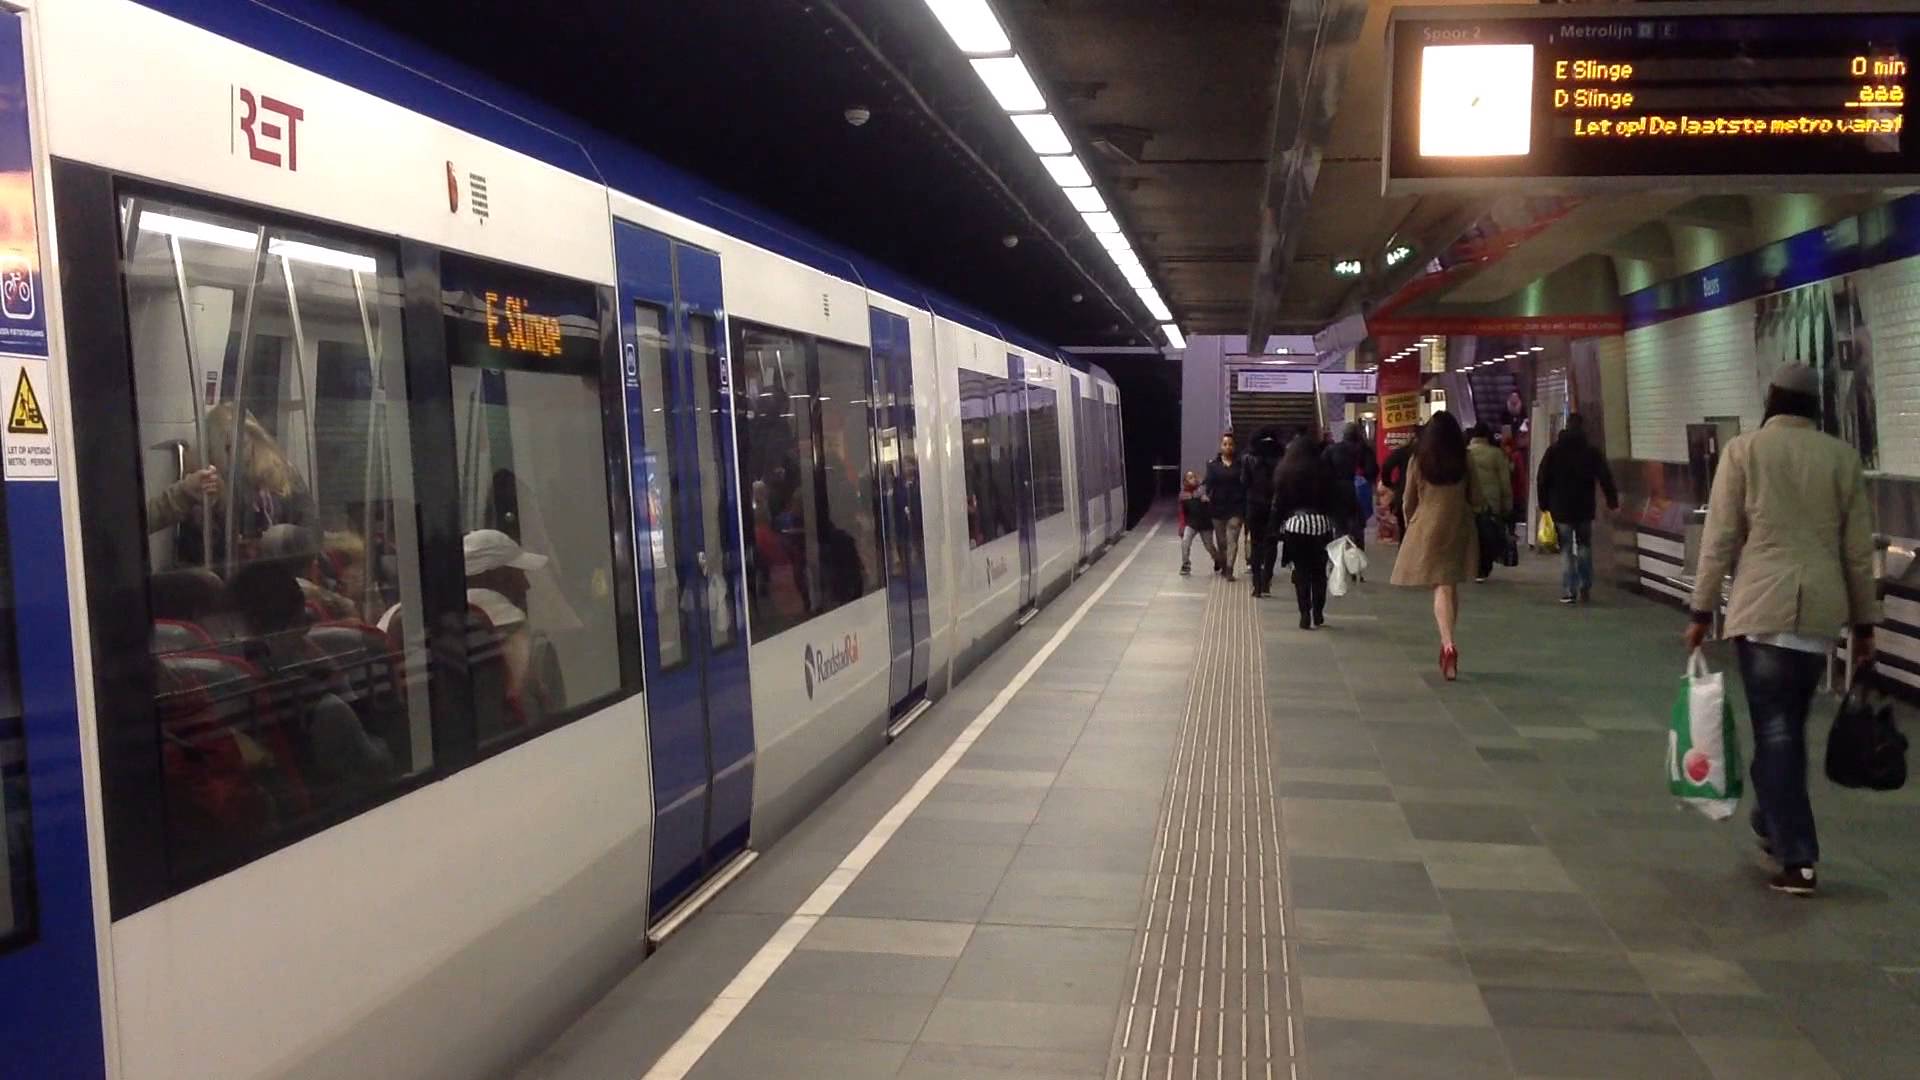 Metrostation Beurs anno ± 2014